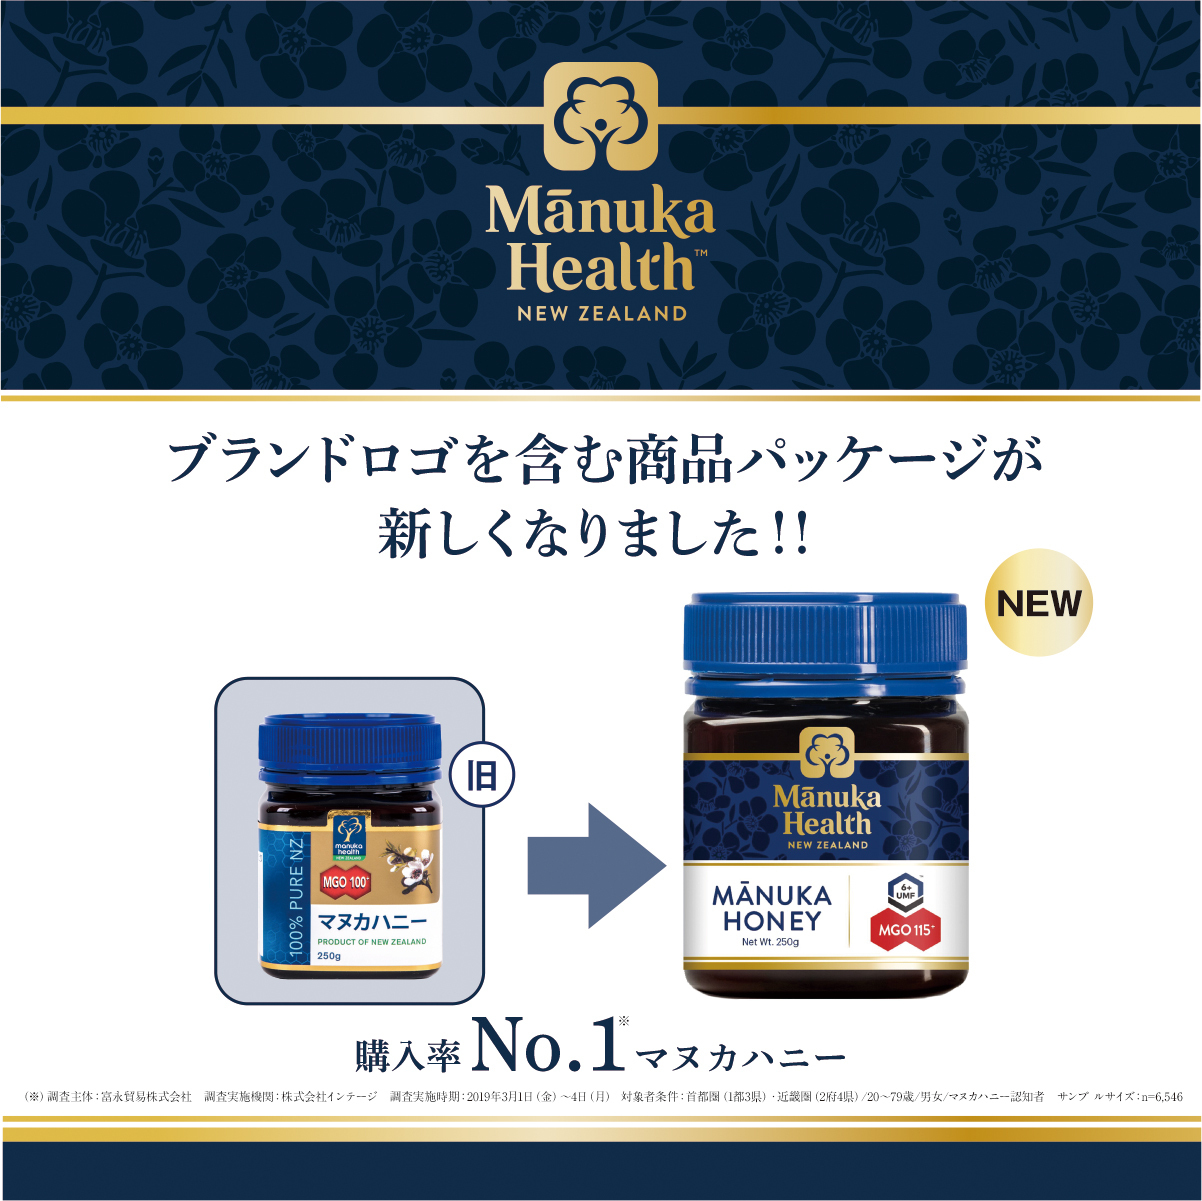 マヌカハニー日本国内no 1ブランド マヌカヘルス 19年夏 デザインを一新し新価格で7 16に販売スタート 富永貿易株式会社のプレスリリース